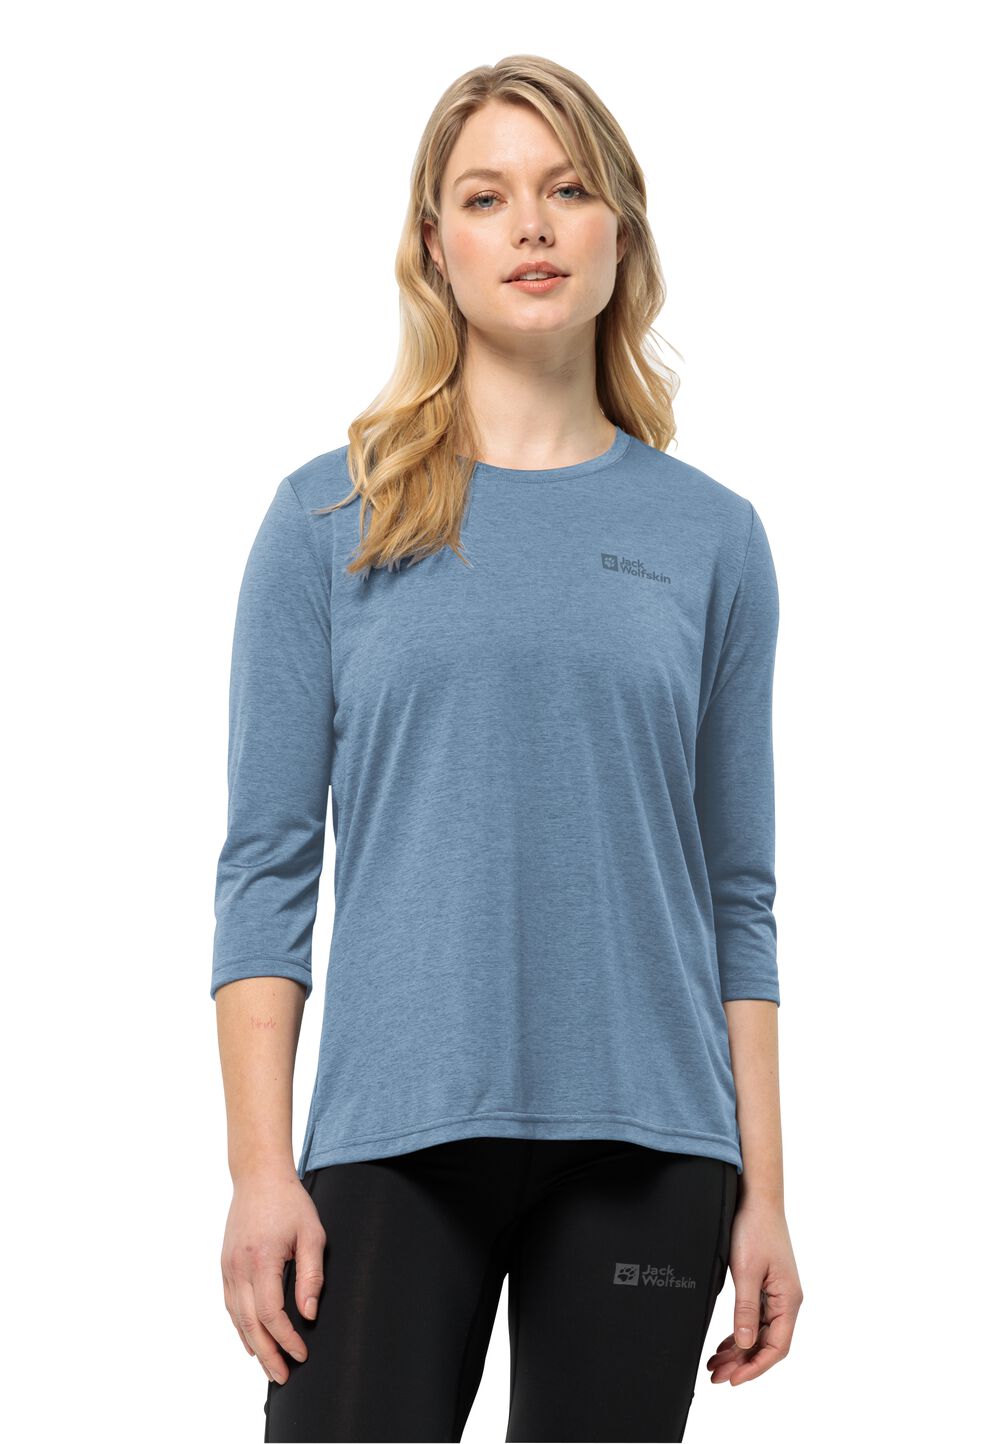 Jack Wolfskin Crosstrail 3 4 T-Shirt Women Functioneel shirt Dames XS elemental blue elemental blue